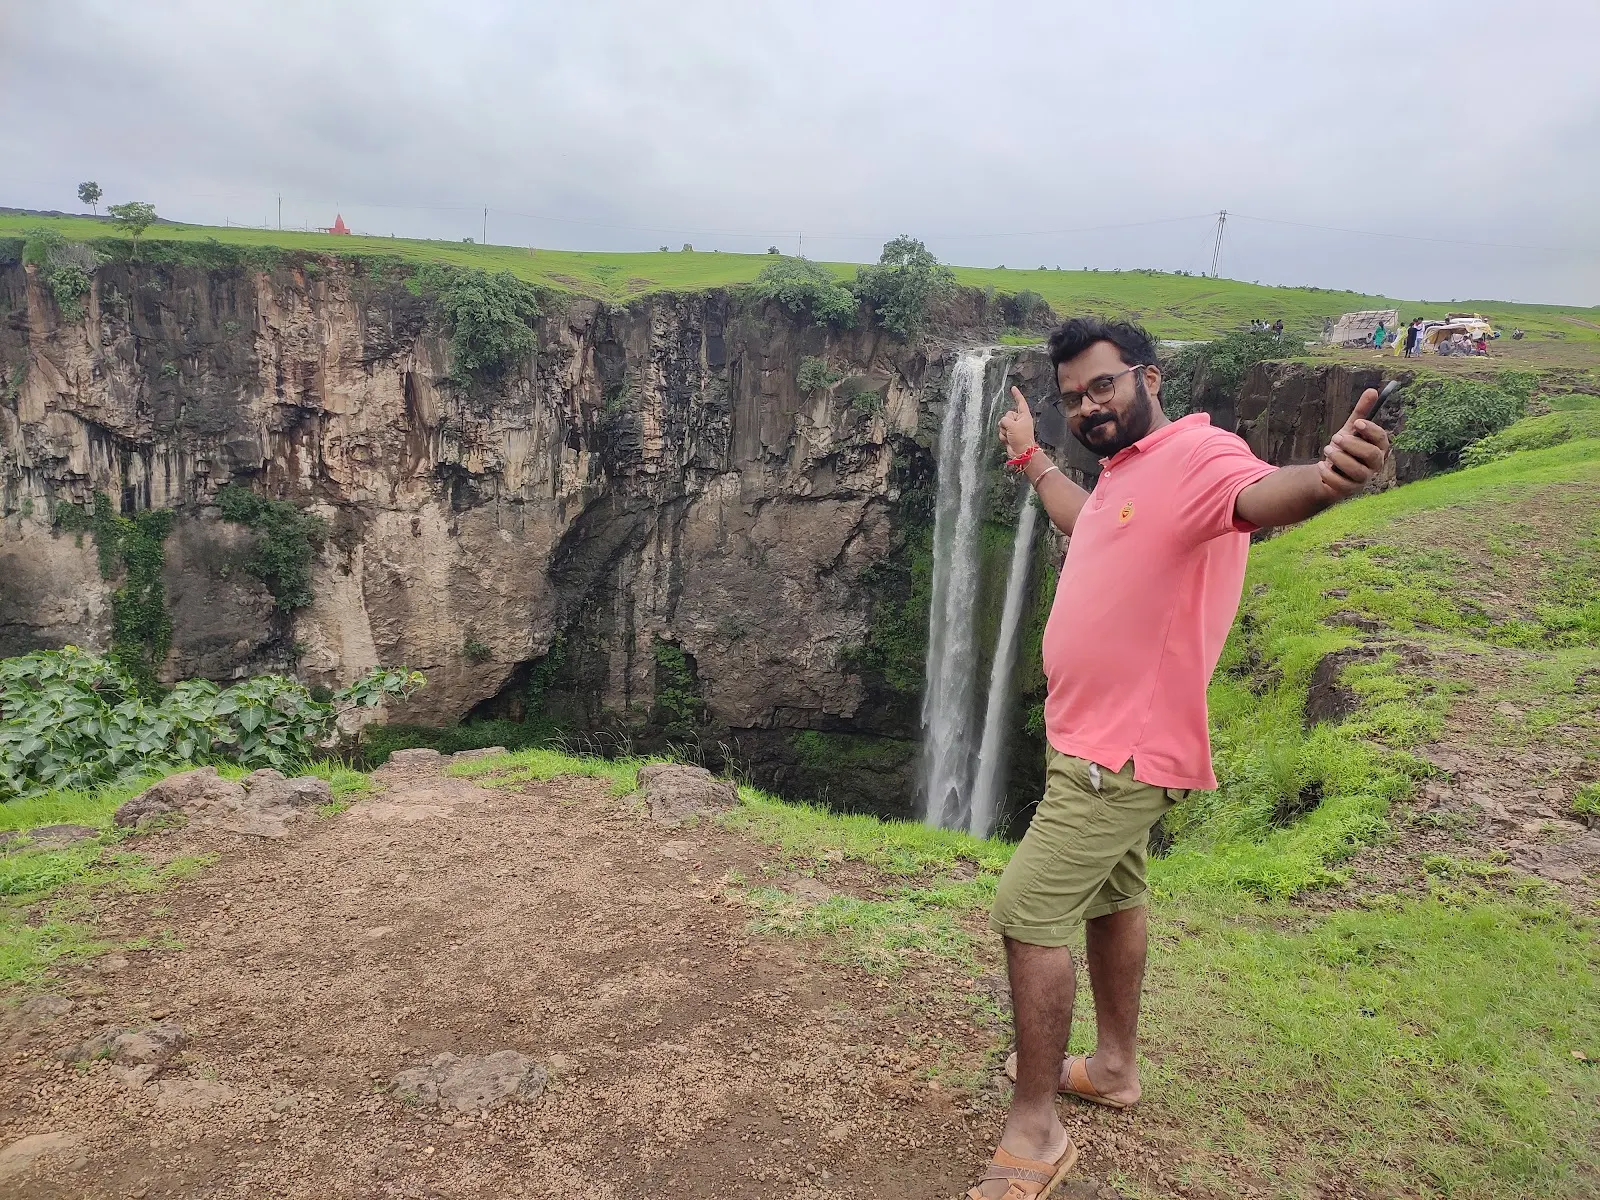 waterfall near indore, hatyari khoh distance, hatyari khoh waterfall indore, hatyari khoh photos, hatyari khoh indore, hatyari khoh history in hindi, hatyari khoh waterfall, hatyari khai, hatiyari kho, hatyari khoh falls, hatyari khoh distance from indore, hatyari khoh history, hatyari khoh indore madhya Pradesh, hatiyari khoh, indore to hatyari khoh distance, indore to hatyari khoh,